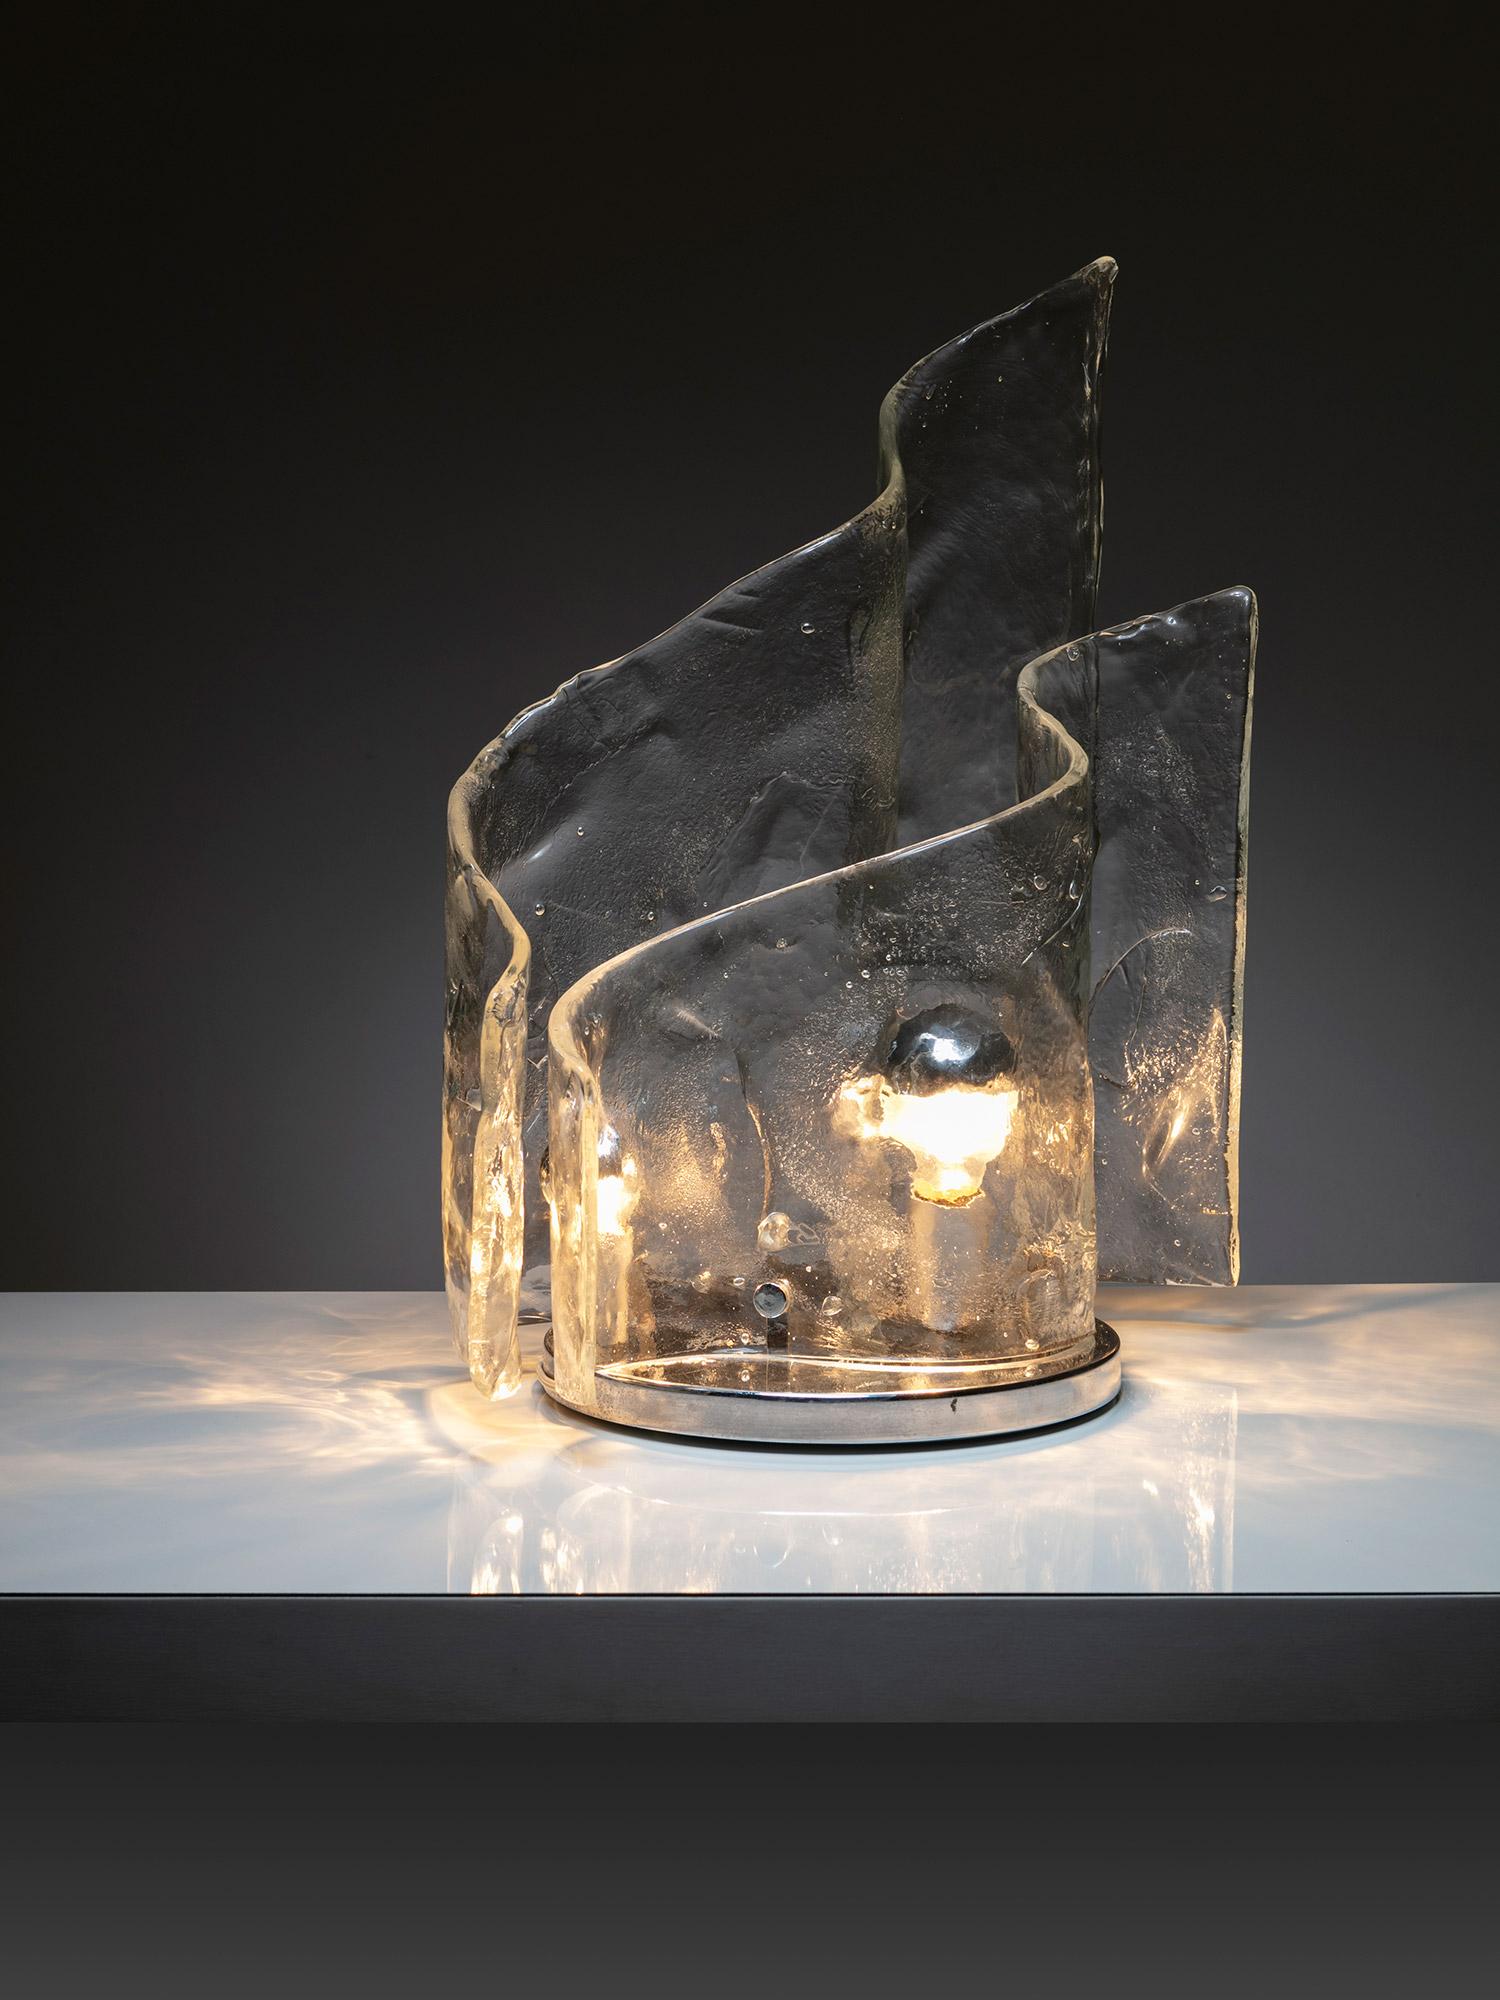 Lampe de table de Carlo Nason pour Mazzega.
Deux grandes vagues en verre Murano Glass, créant un léger nuage.